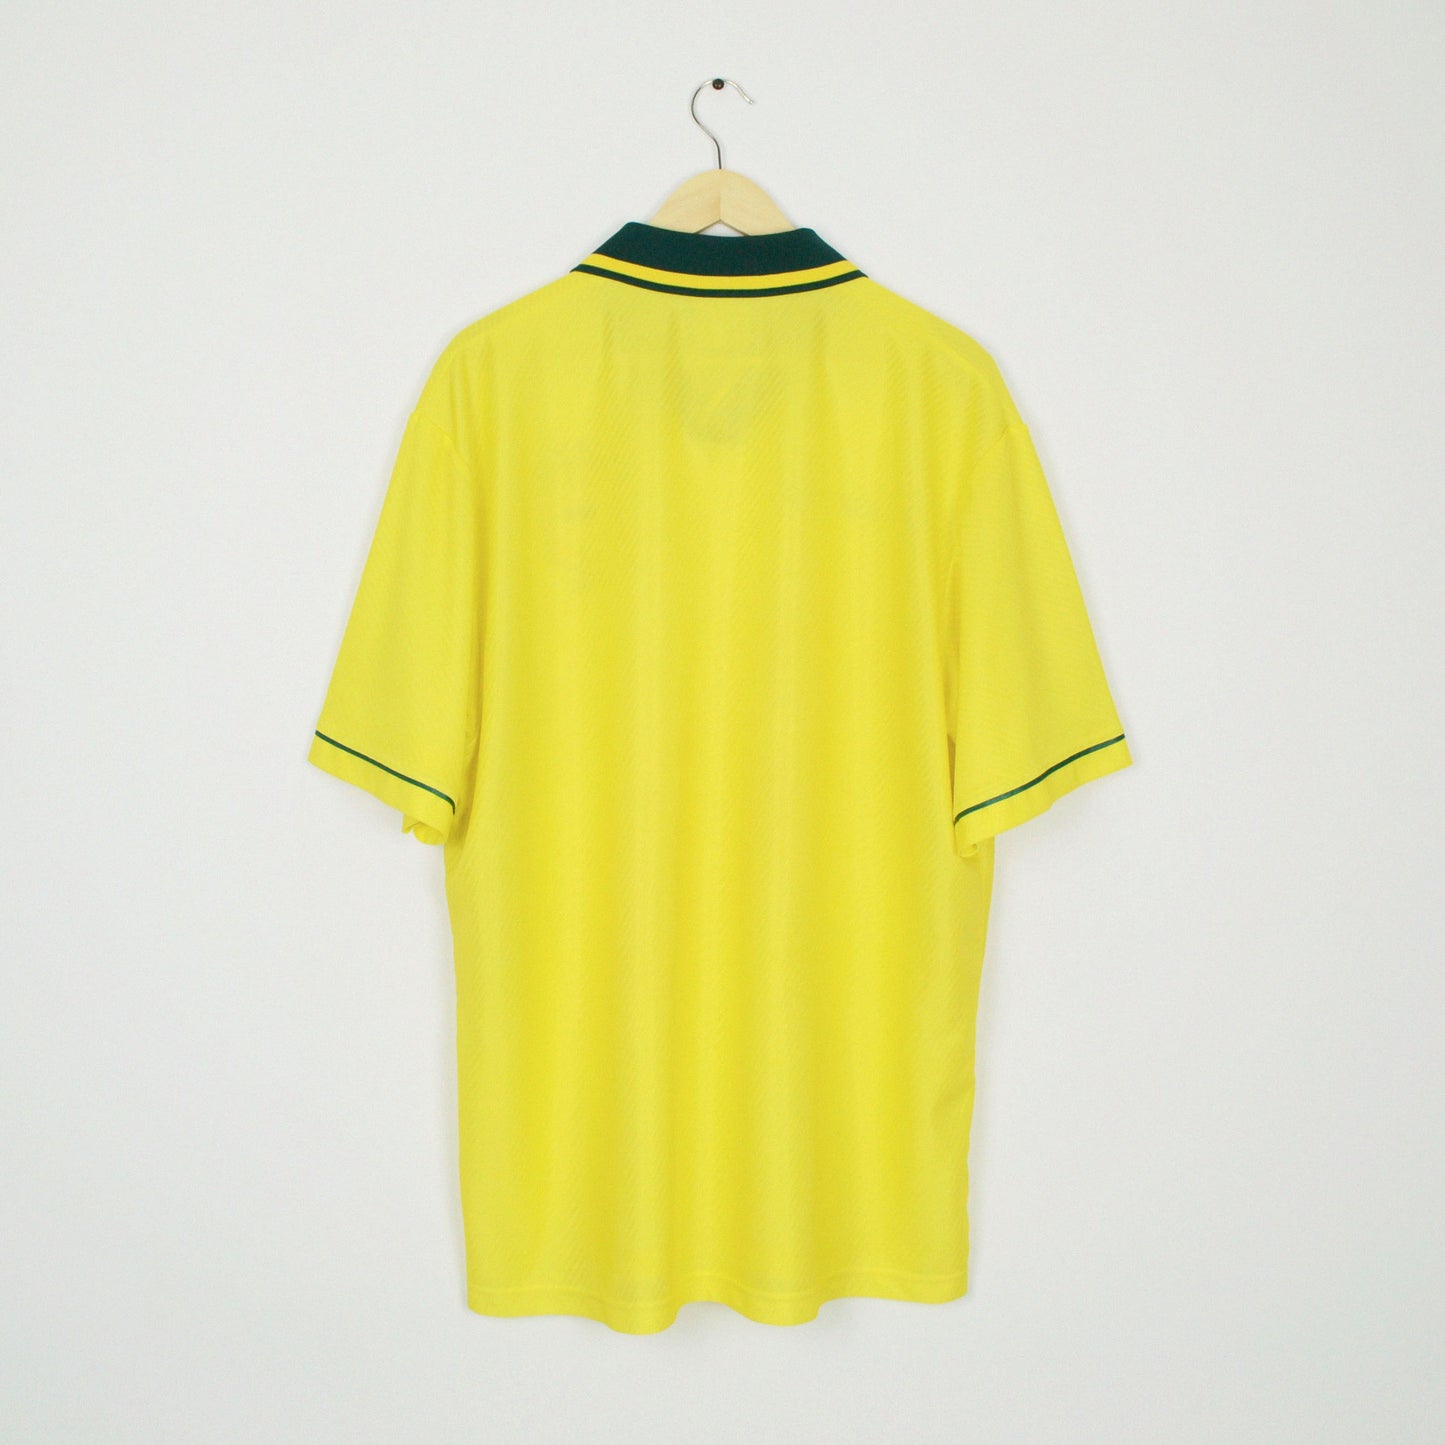 1994-95 Umbro Brazil Home Shirt XL